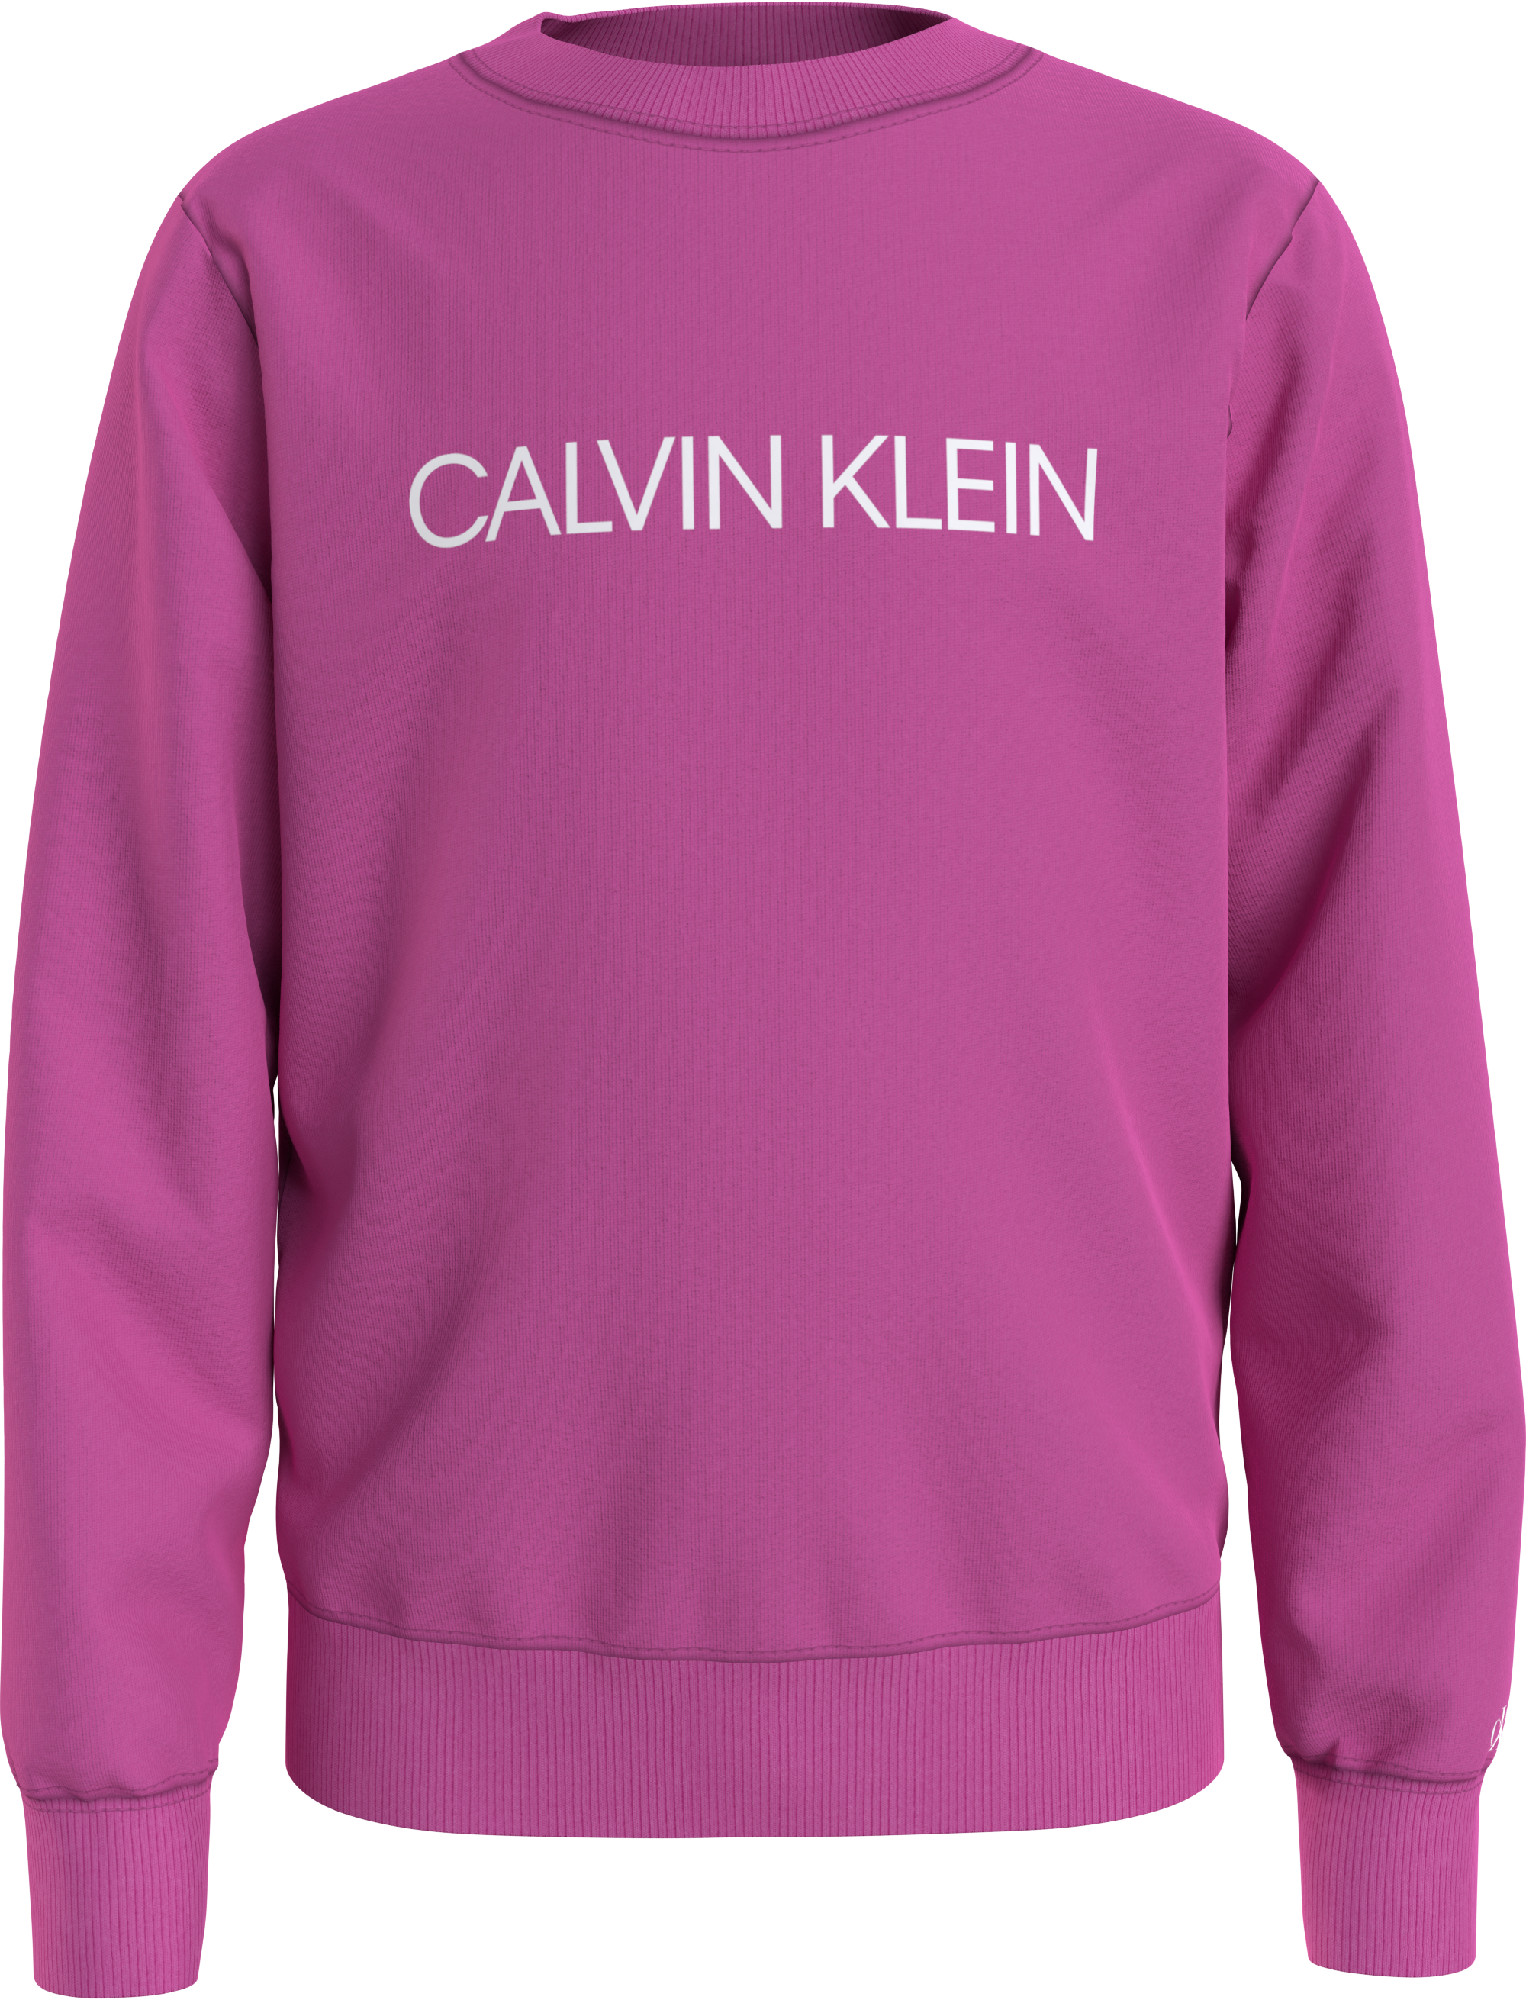 Calvin Klein INSTITUTIONAL LOGO SWEATSHIRT